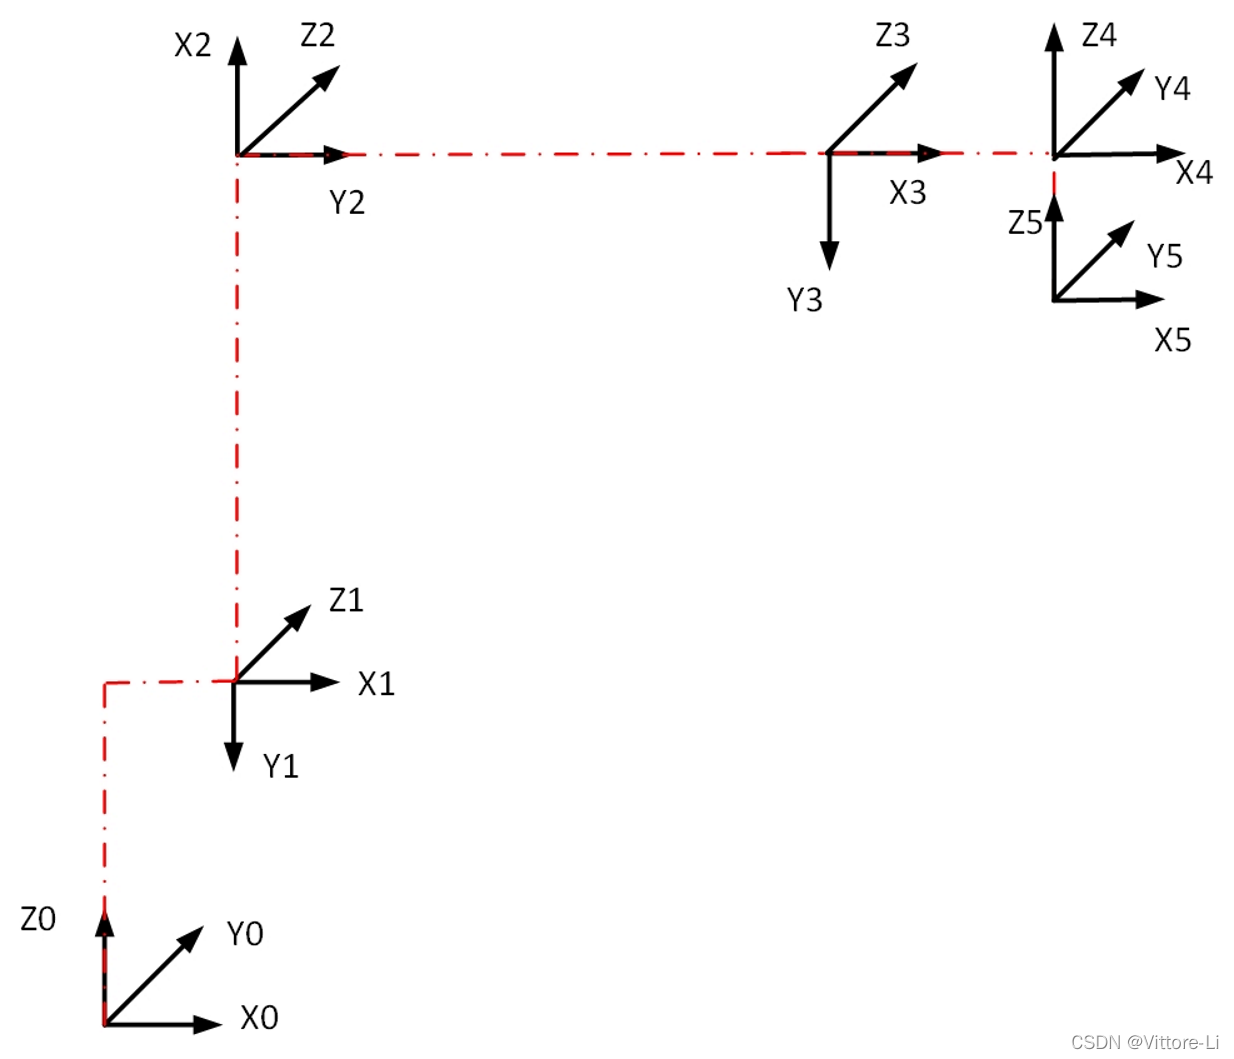 四轴码垛机器人DH模型运动学_四轴码垛轨迹规划正逆解圆弧插补路径优化_ 